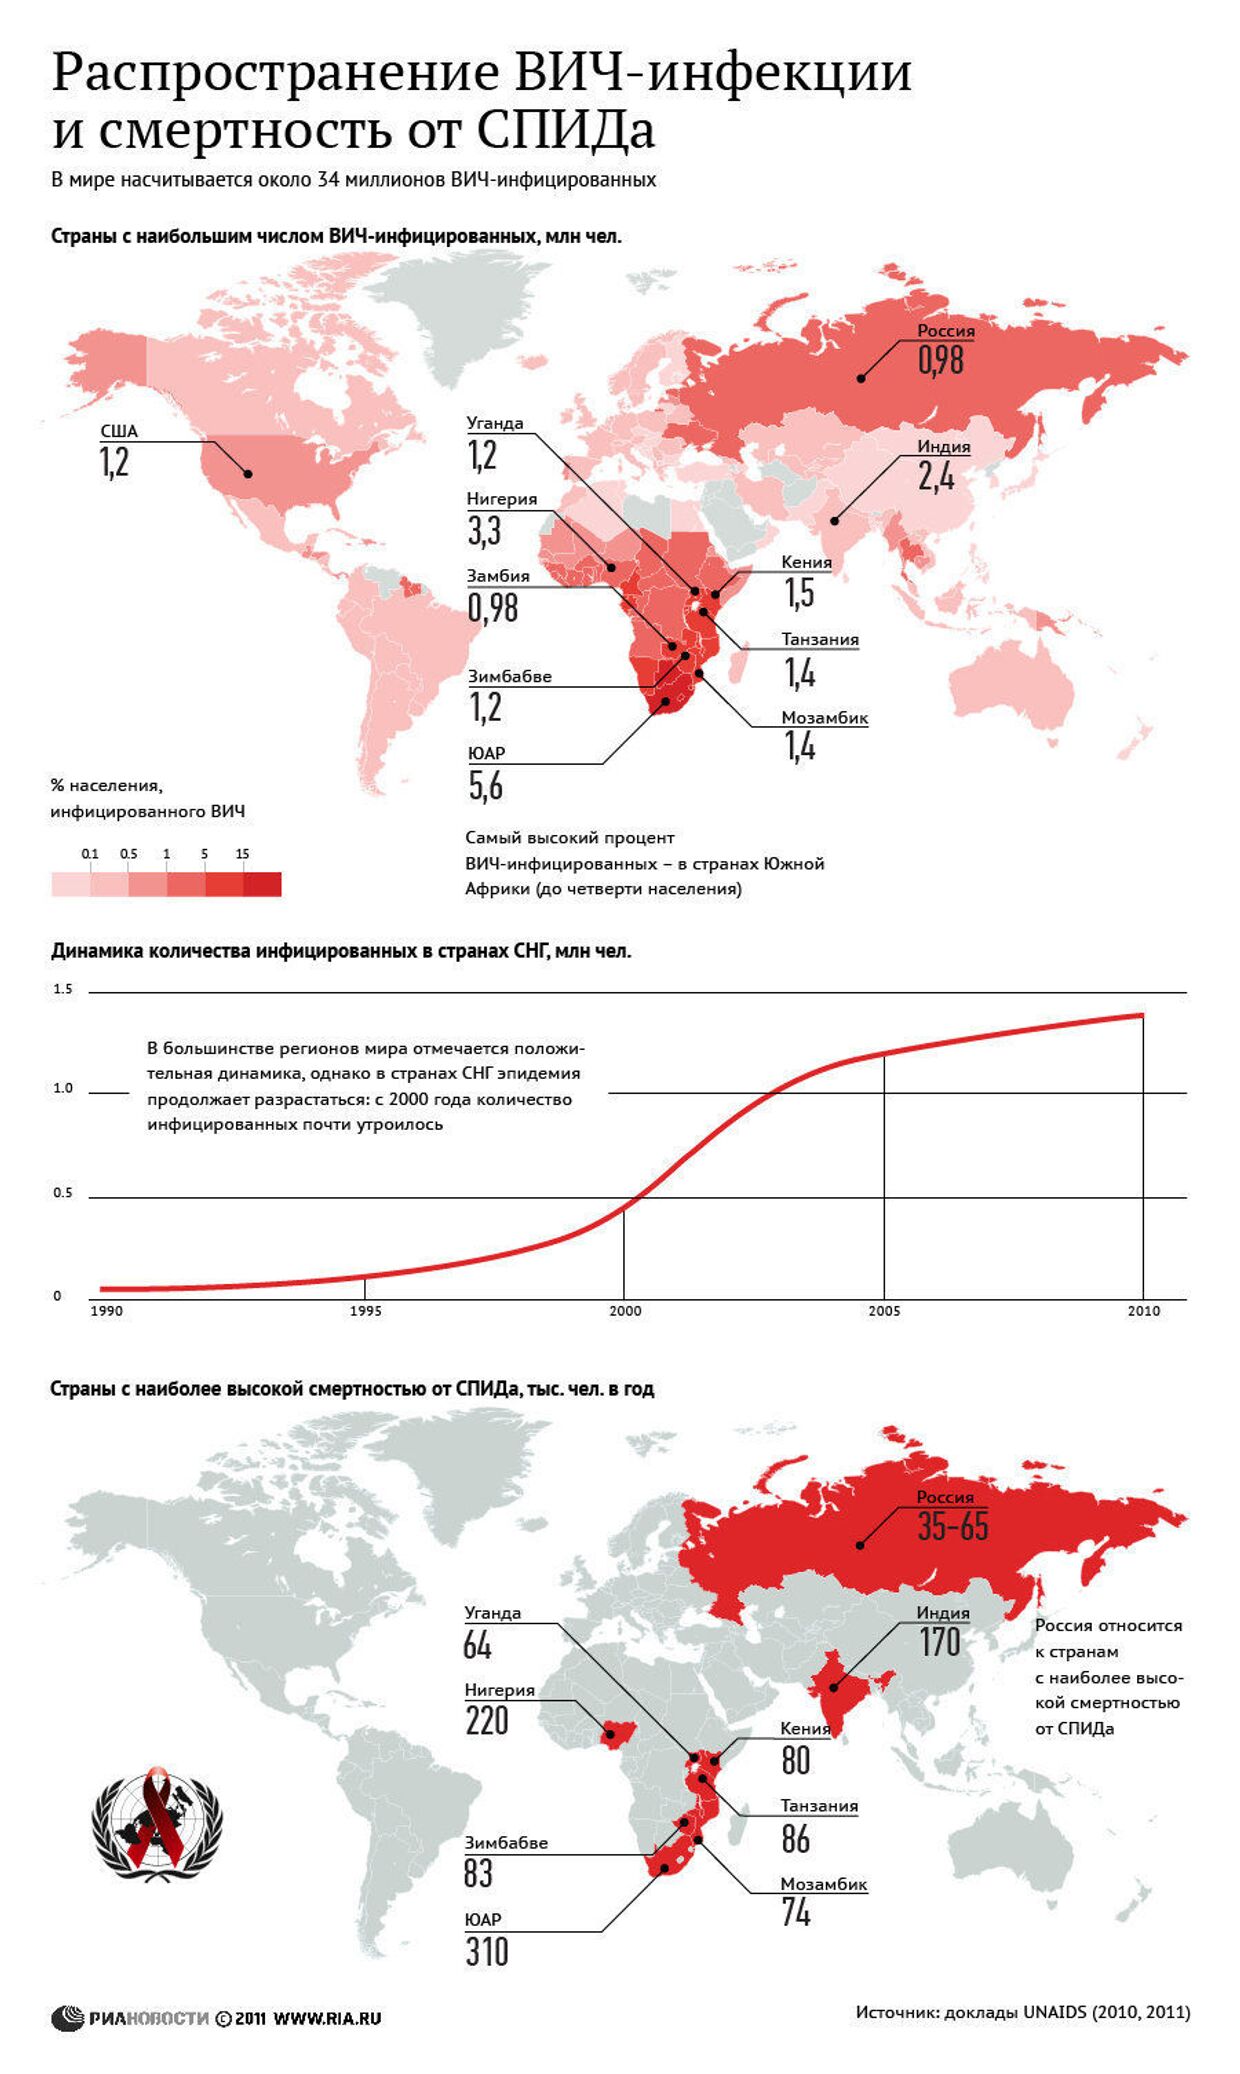 Распространение ВИЧ-инфекции в мире